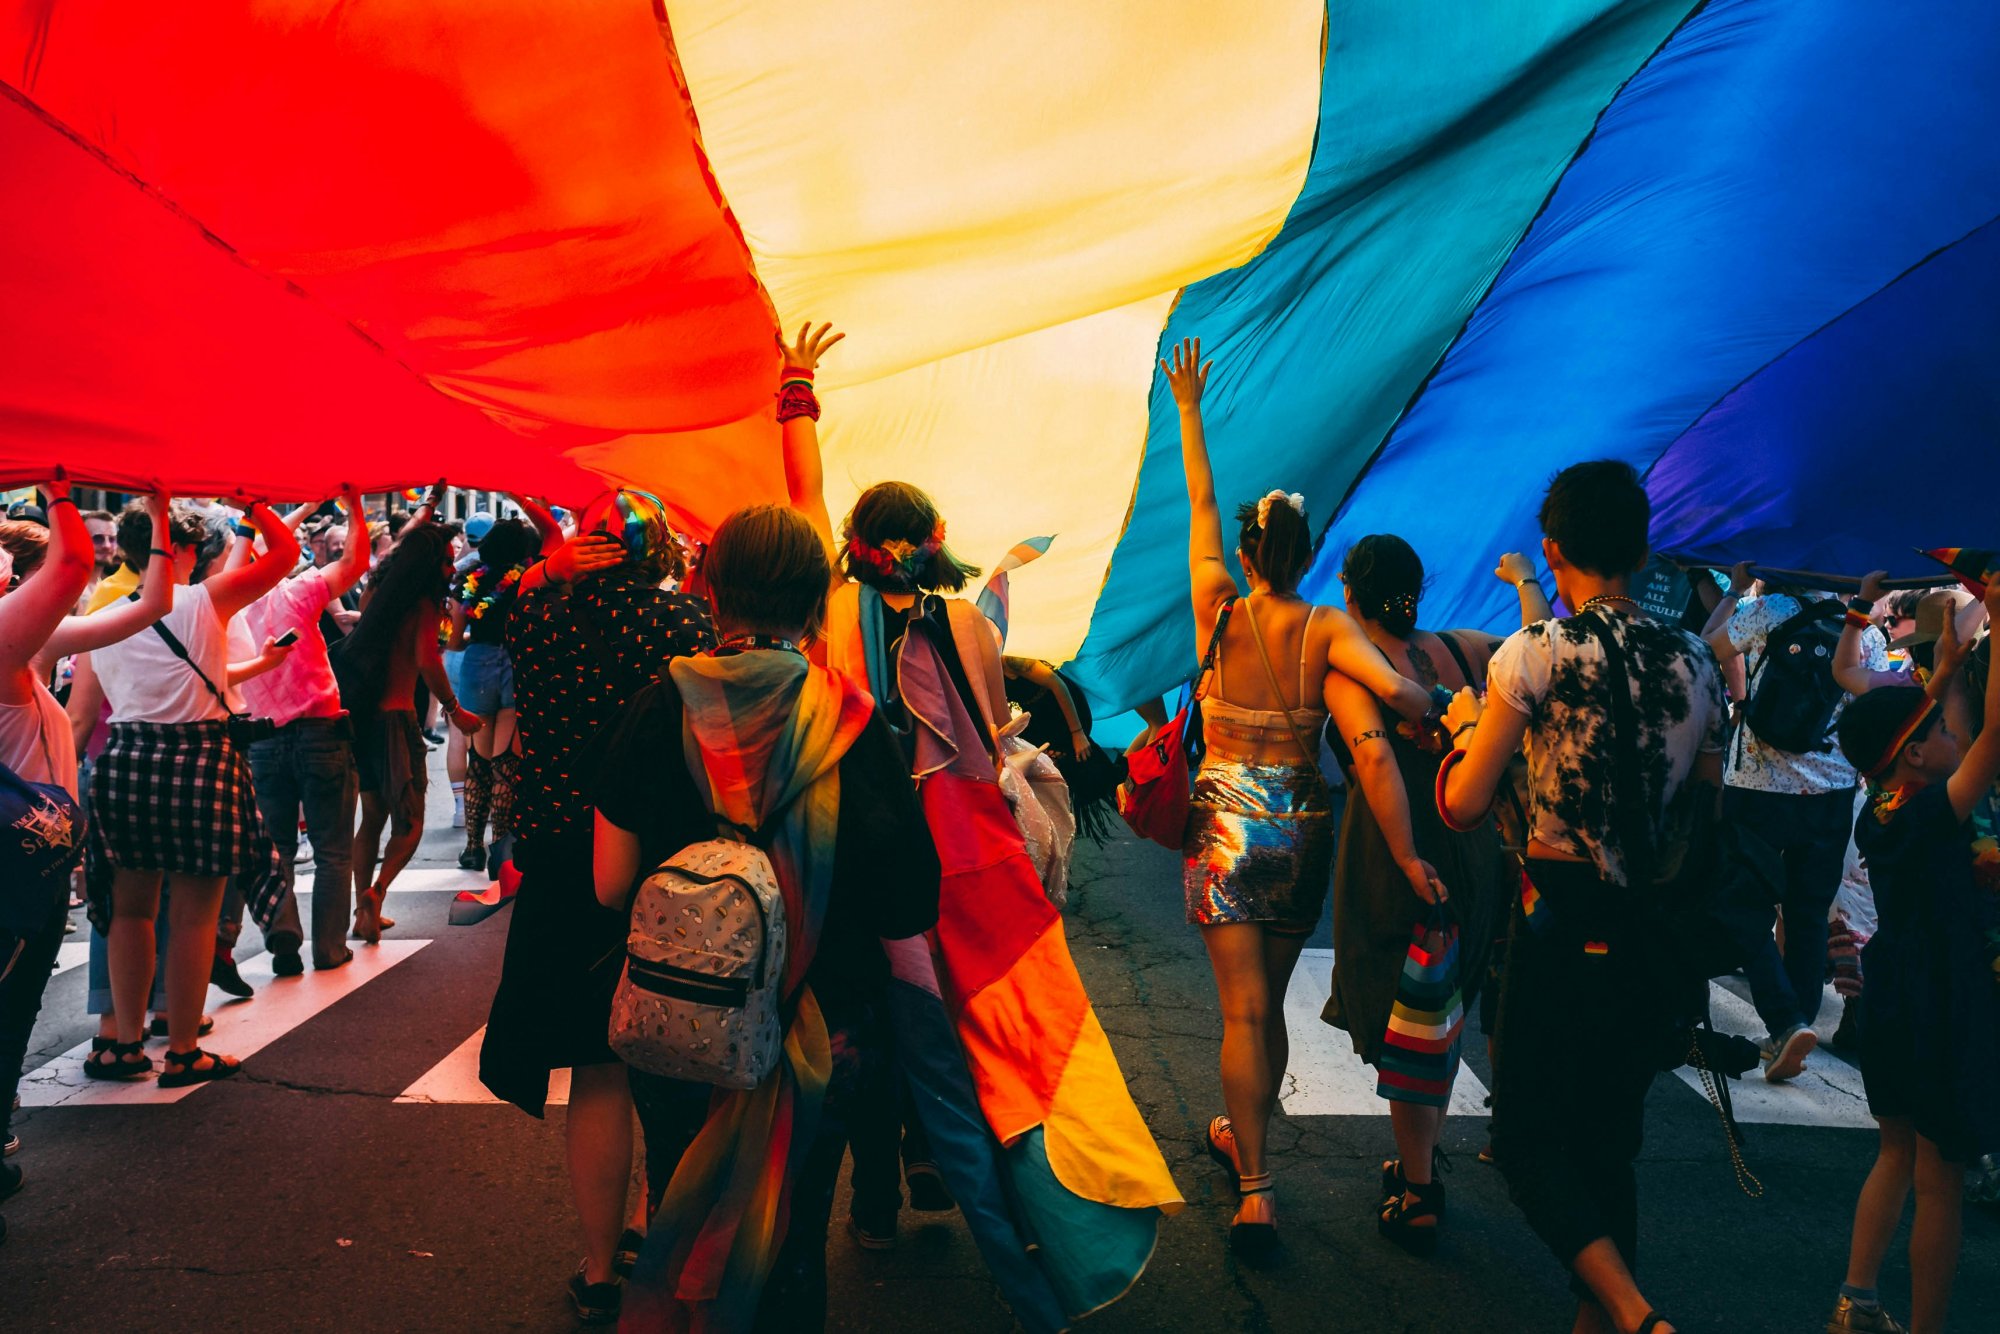 Η χειρότερη χώρα στην Ευρώπη για τα ΛΟΑΤΚΙ+ άτομα – Η θέση της Ελλάδας